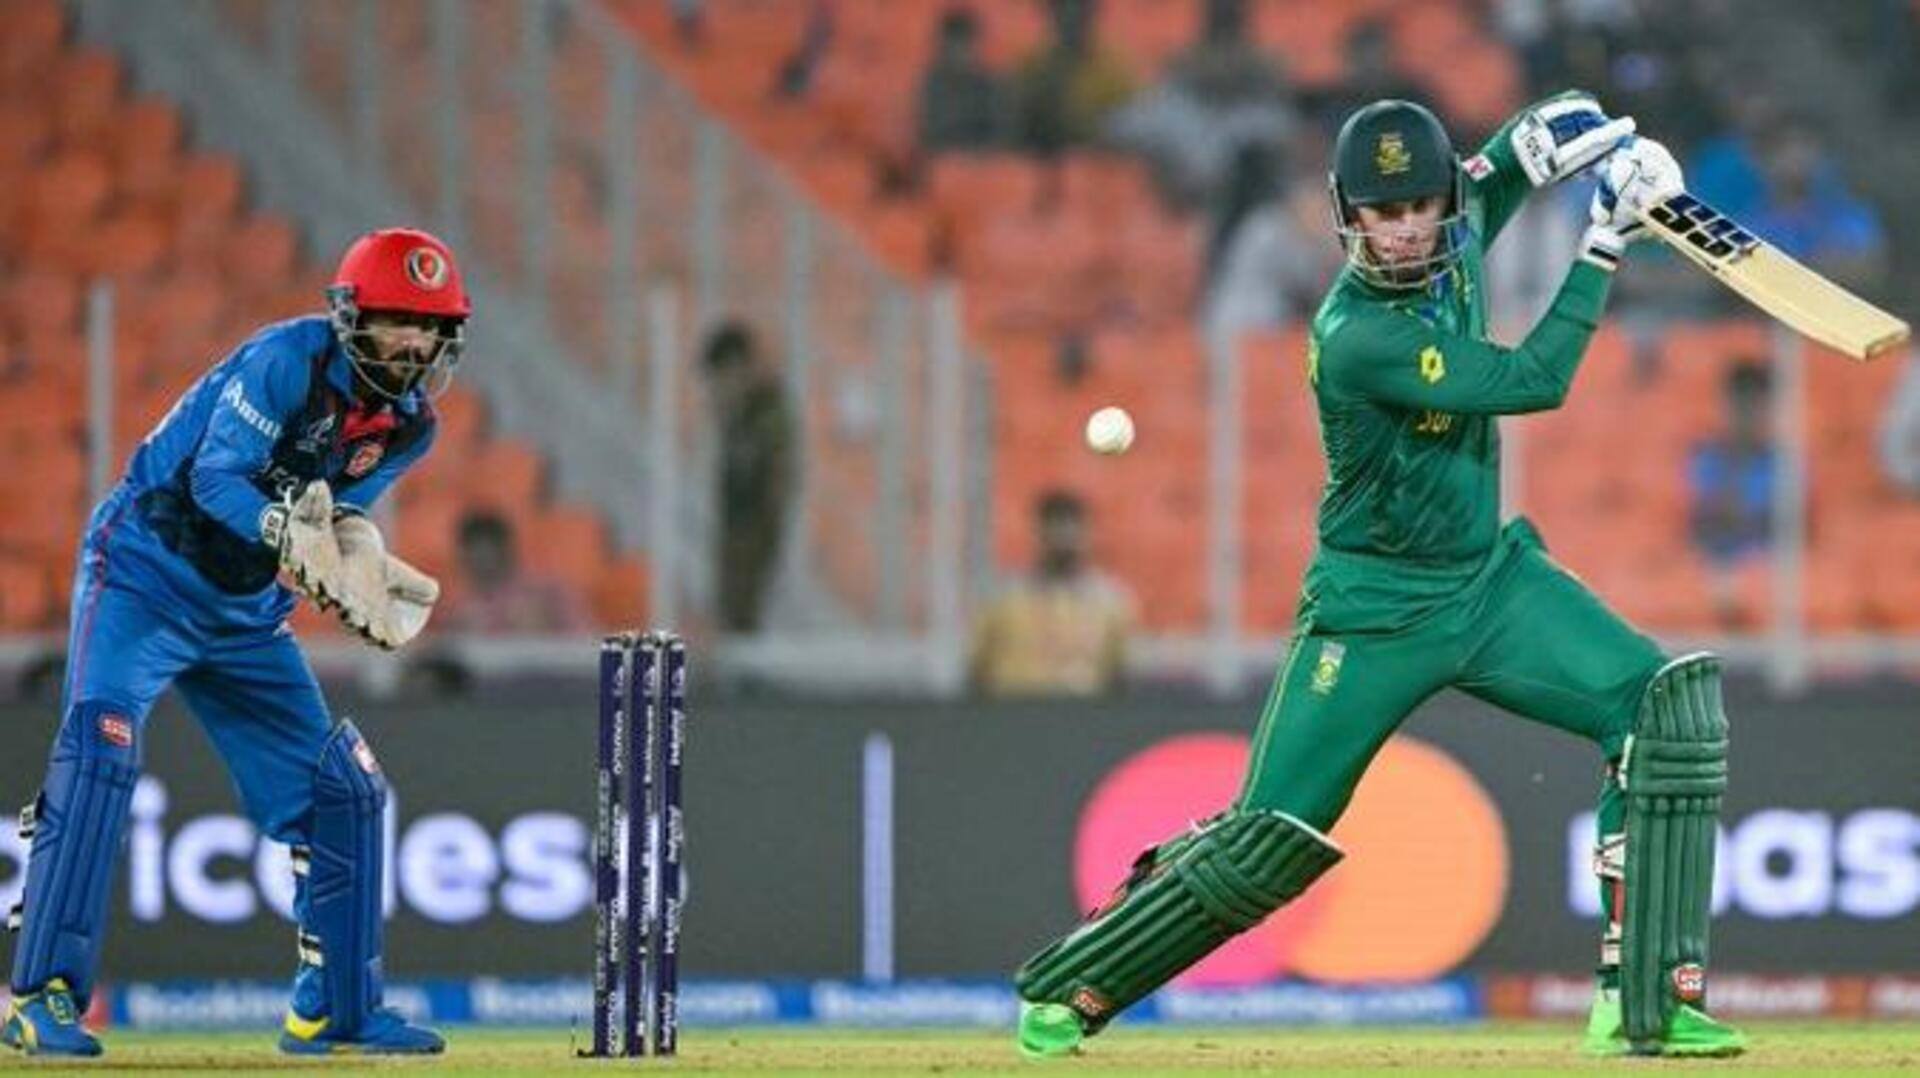 Rassie van der Dussen smokes match-winning 76* against Afghanistan: Stats